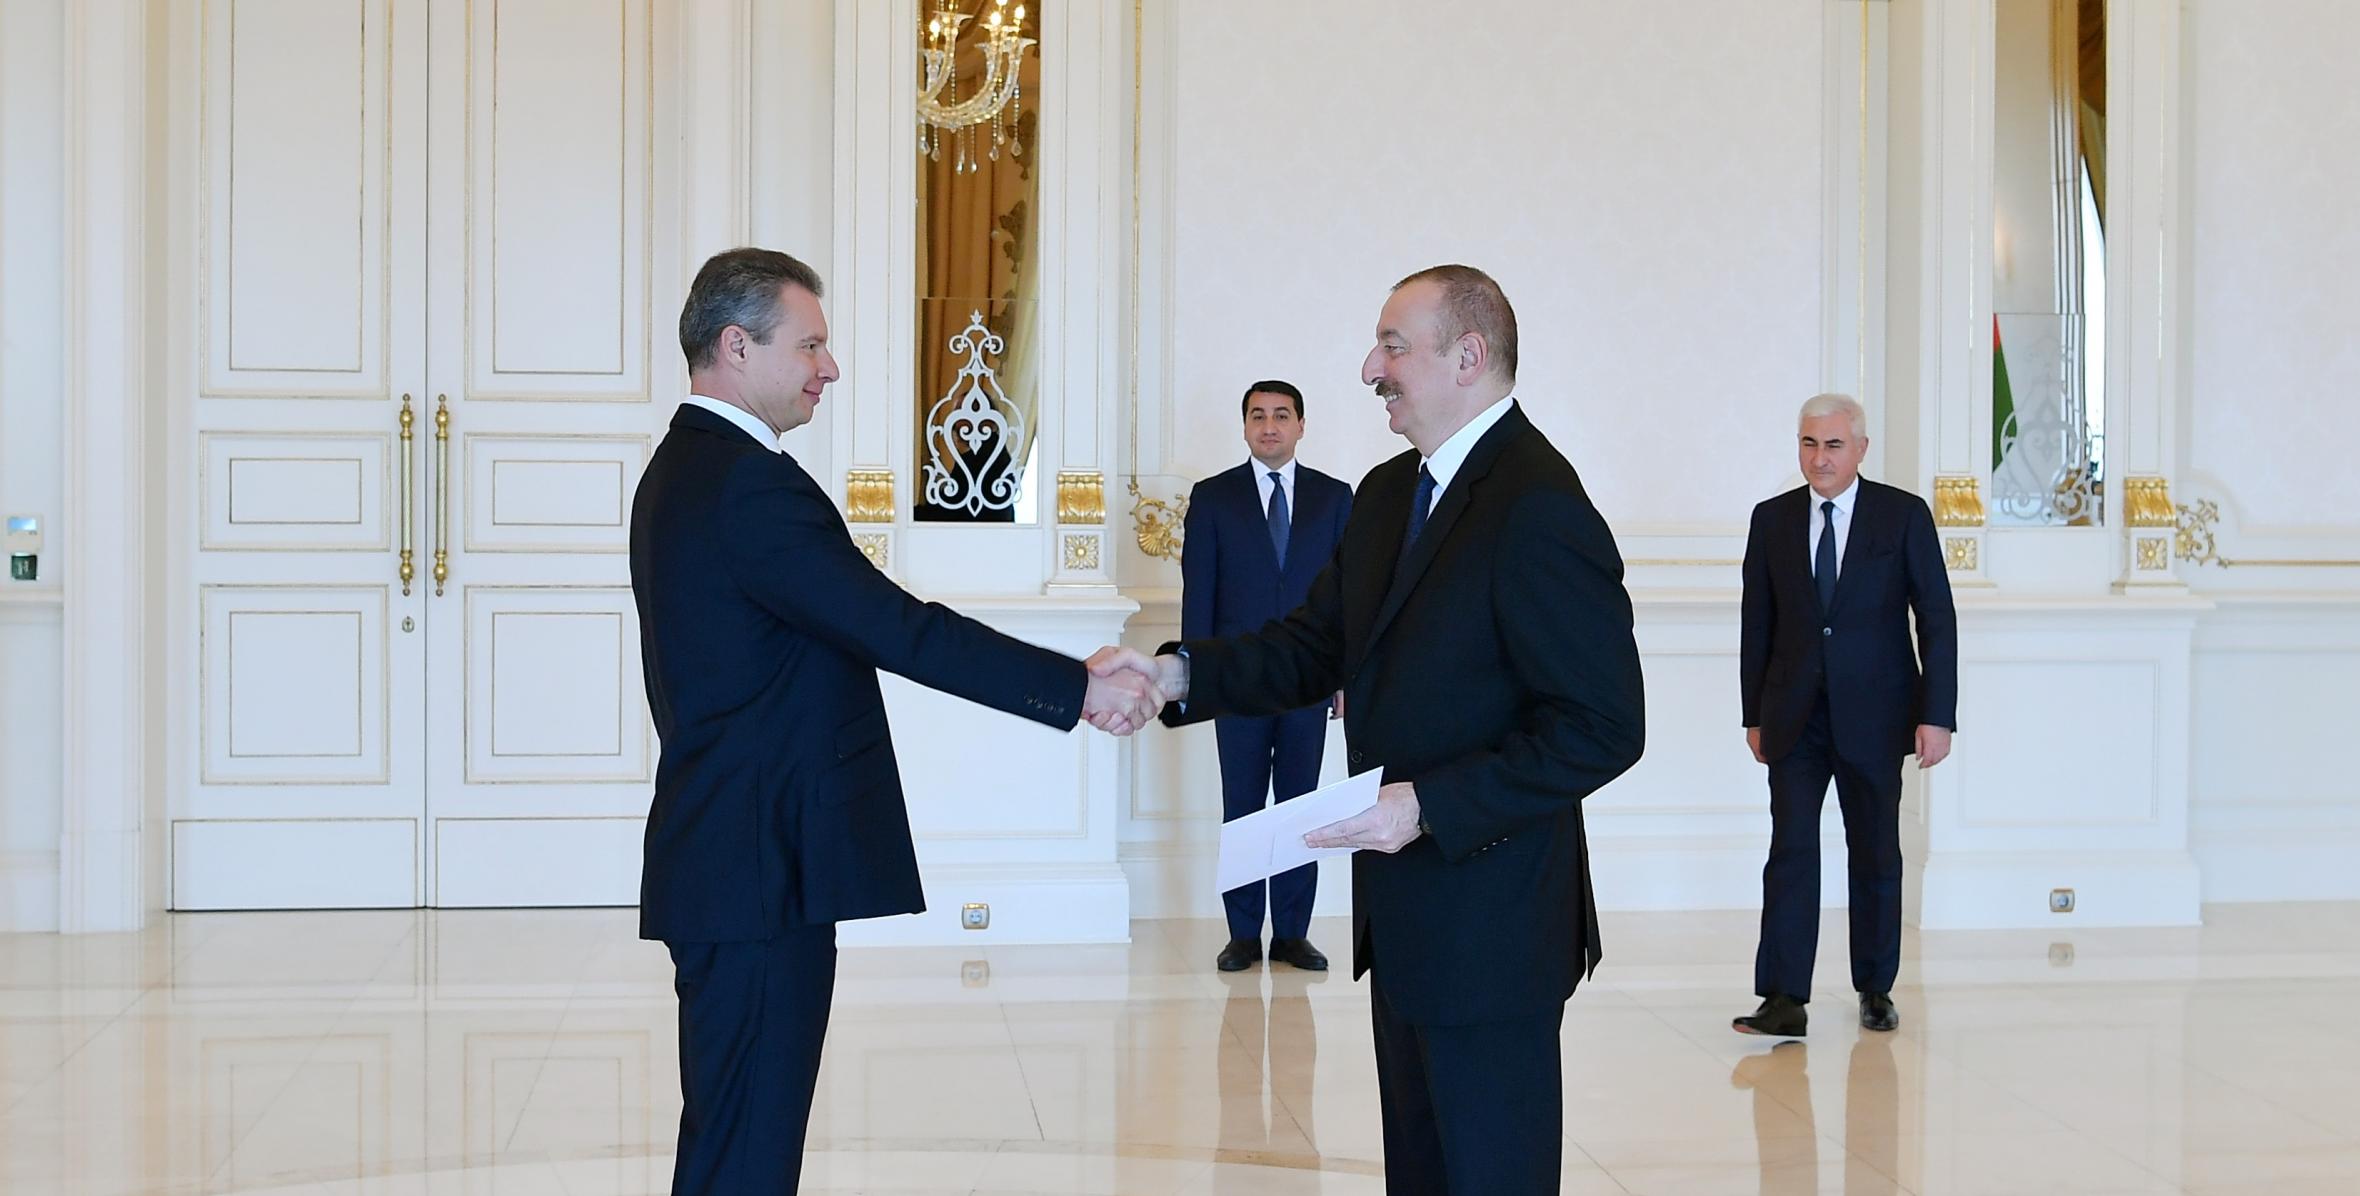 Ильхам Алиев принял верительные грамоты новоназначенного посла Украины в Азербайджане